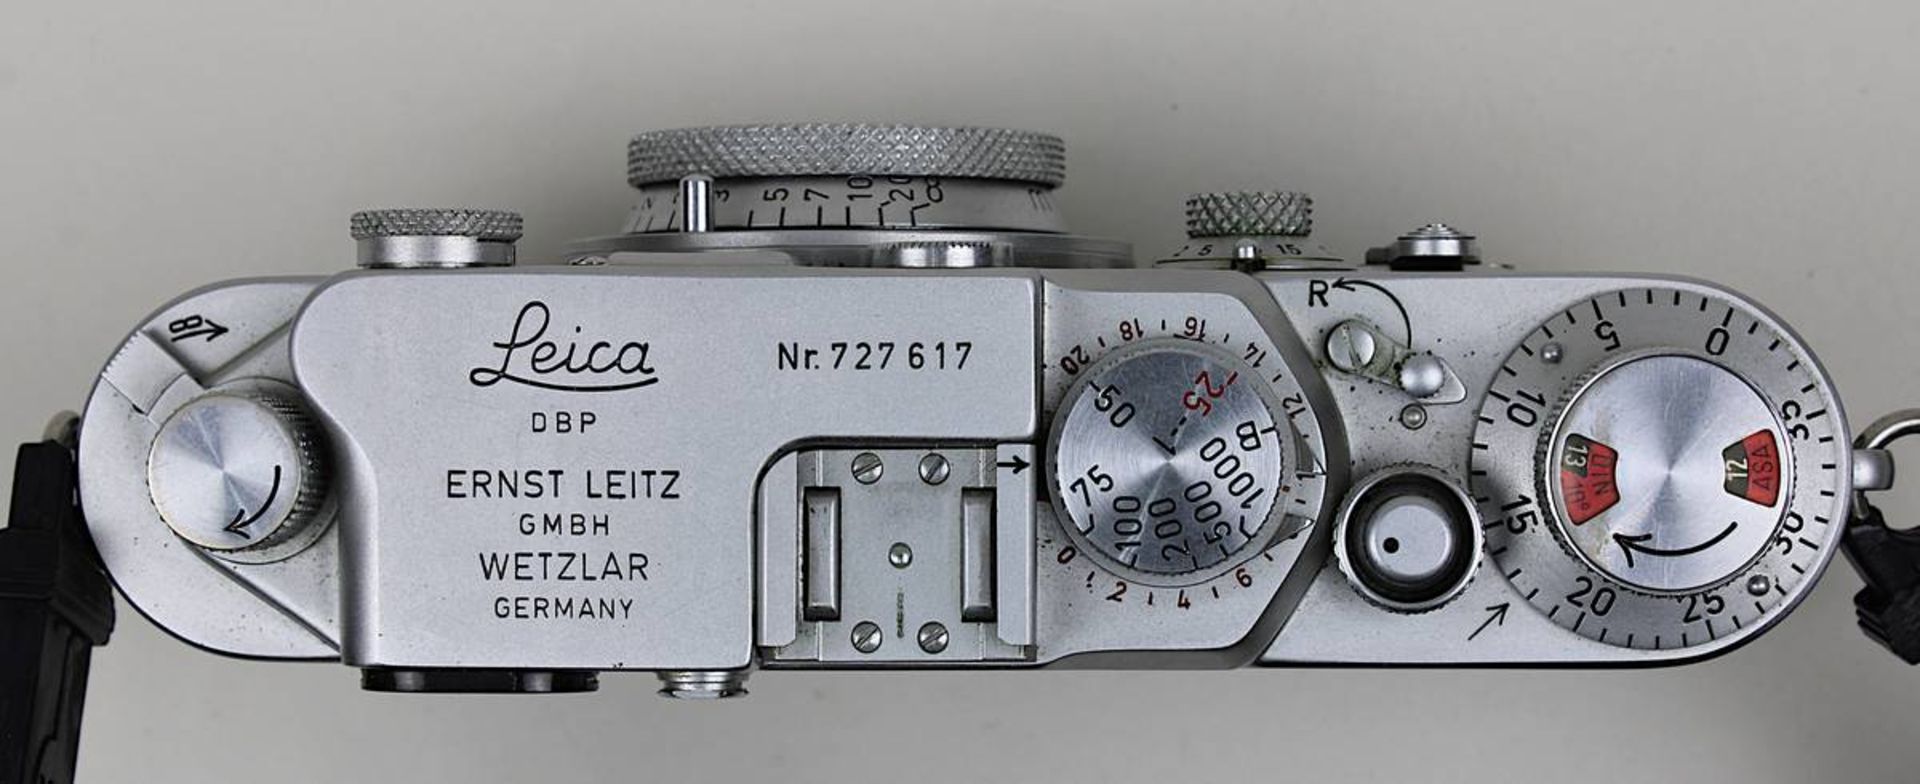 Leica III F, Messsucherkamera, Ernst Leitz Wetzlar, um 1950/60er Jahre, Nr. 727617, Kleinbildfilm, - Bild 2 aus 2